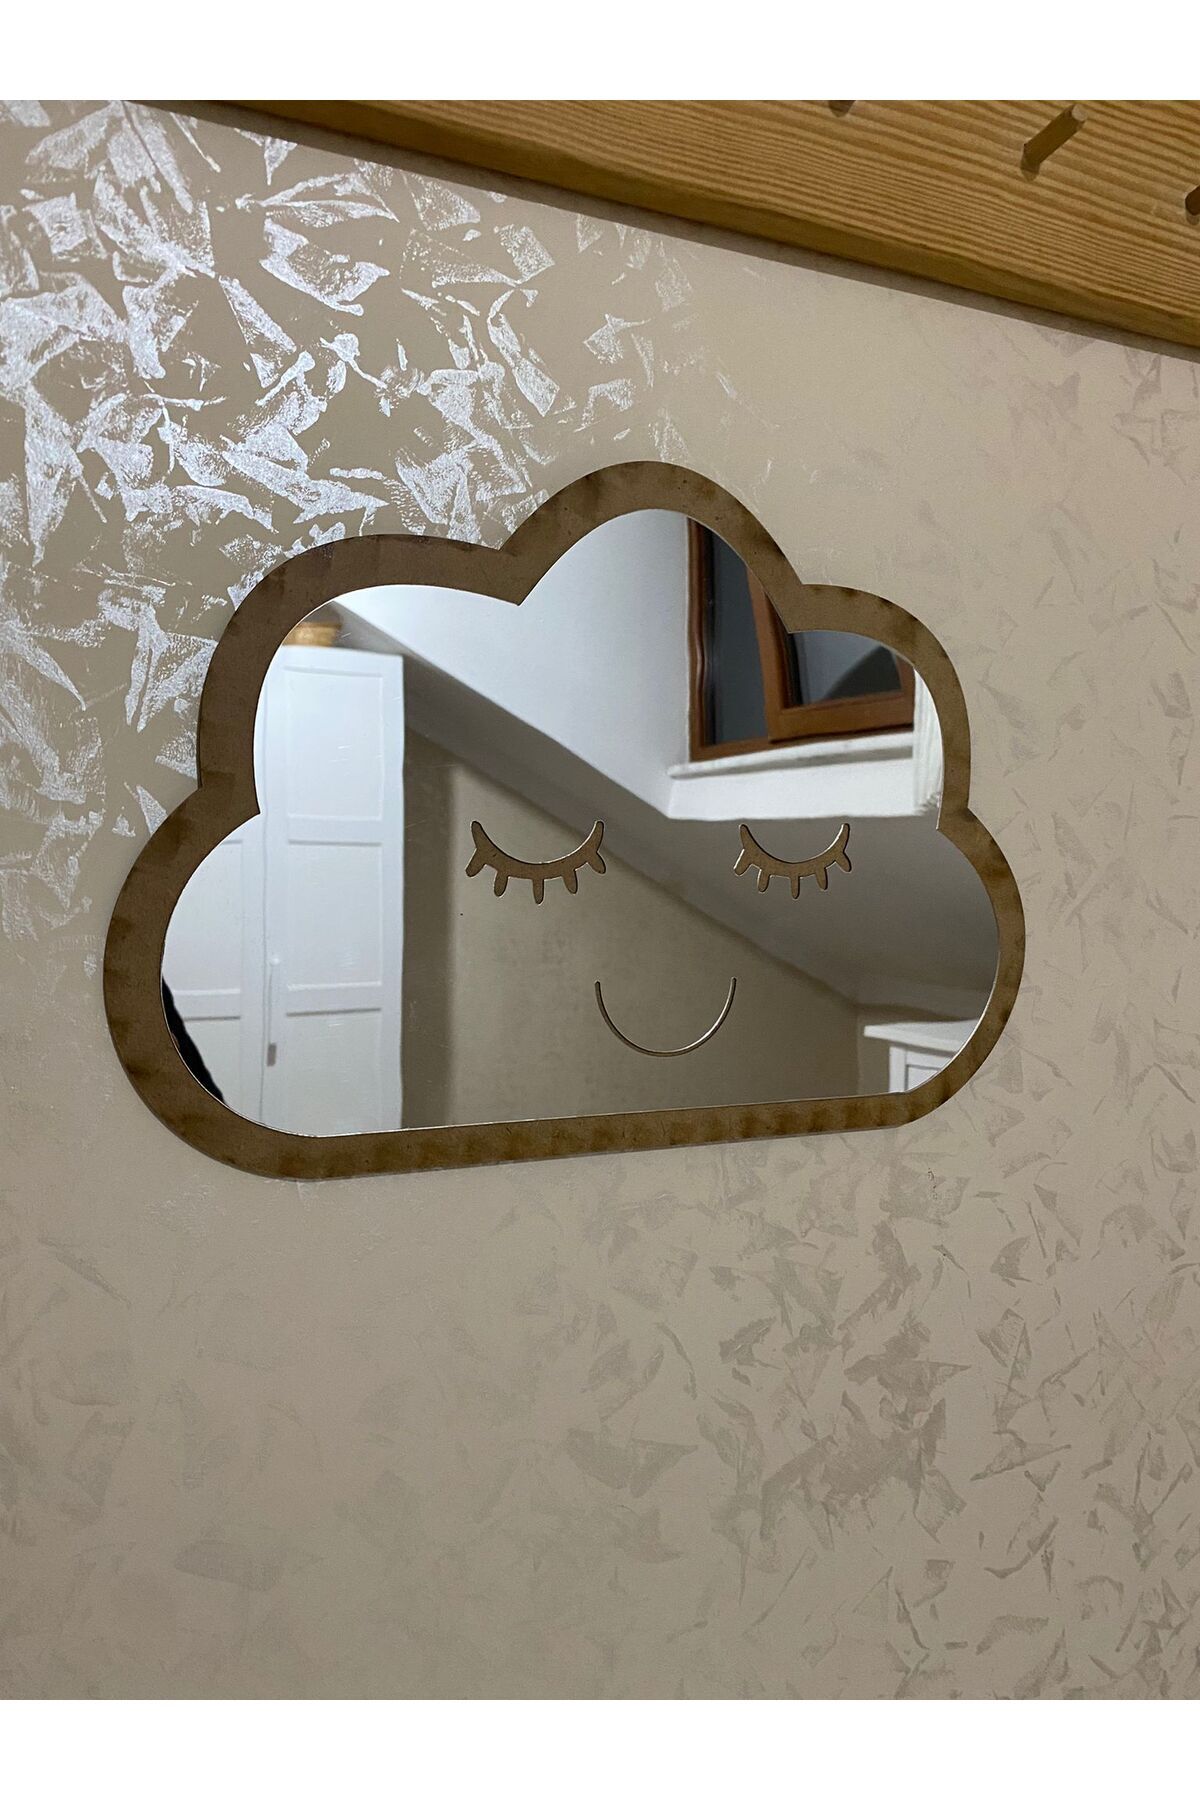 Olur o zaman Şirin Bulut Figürlü Çocuk Odası Dekoratif Ayna